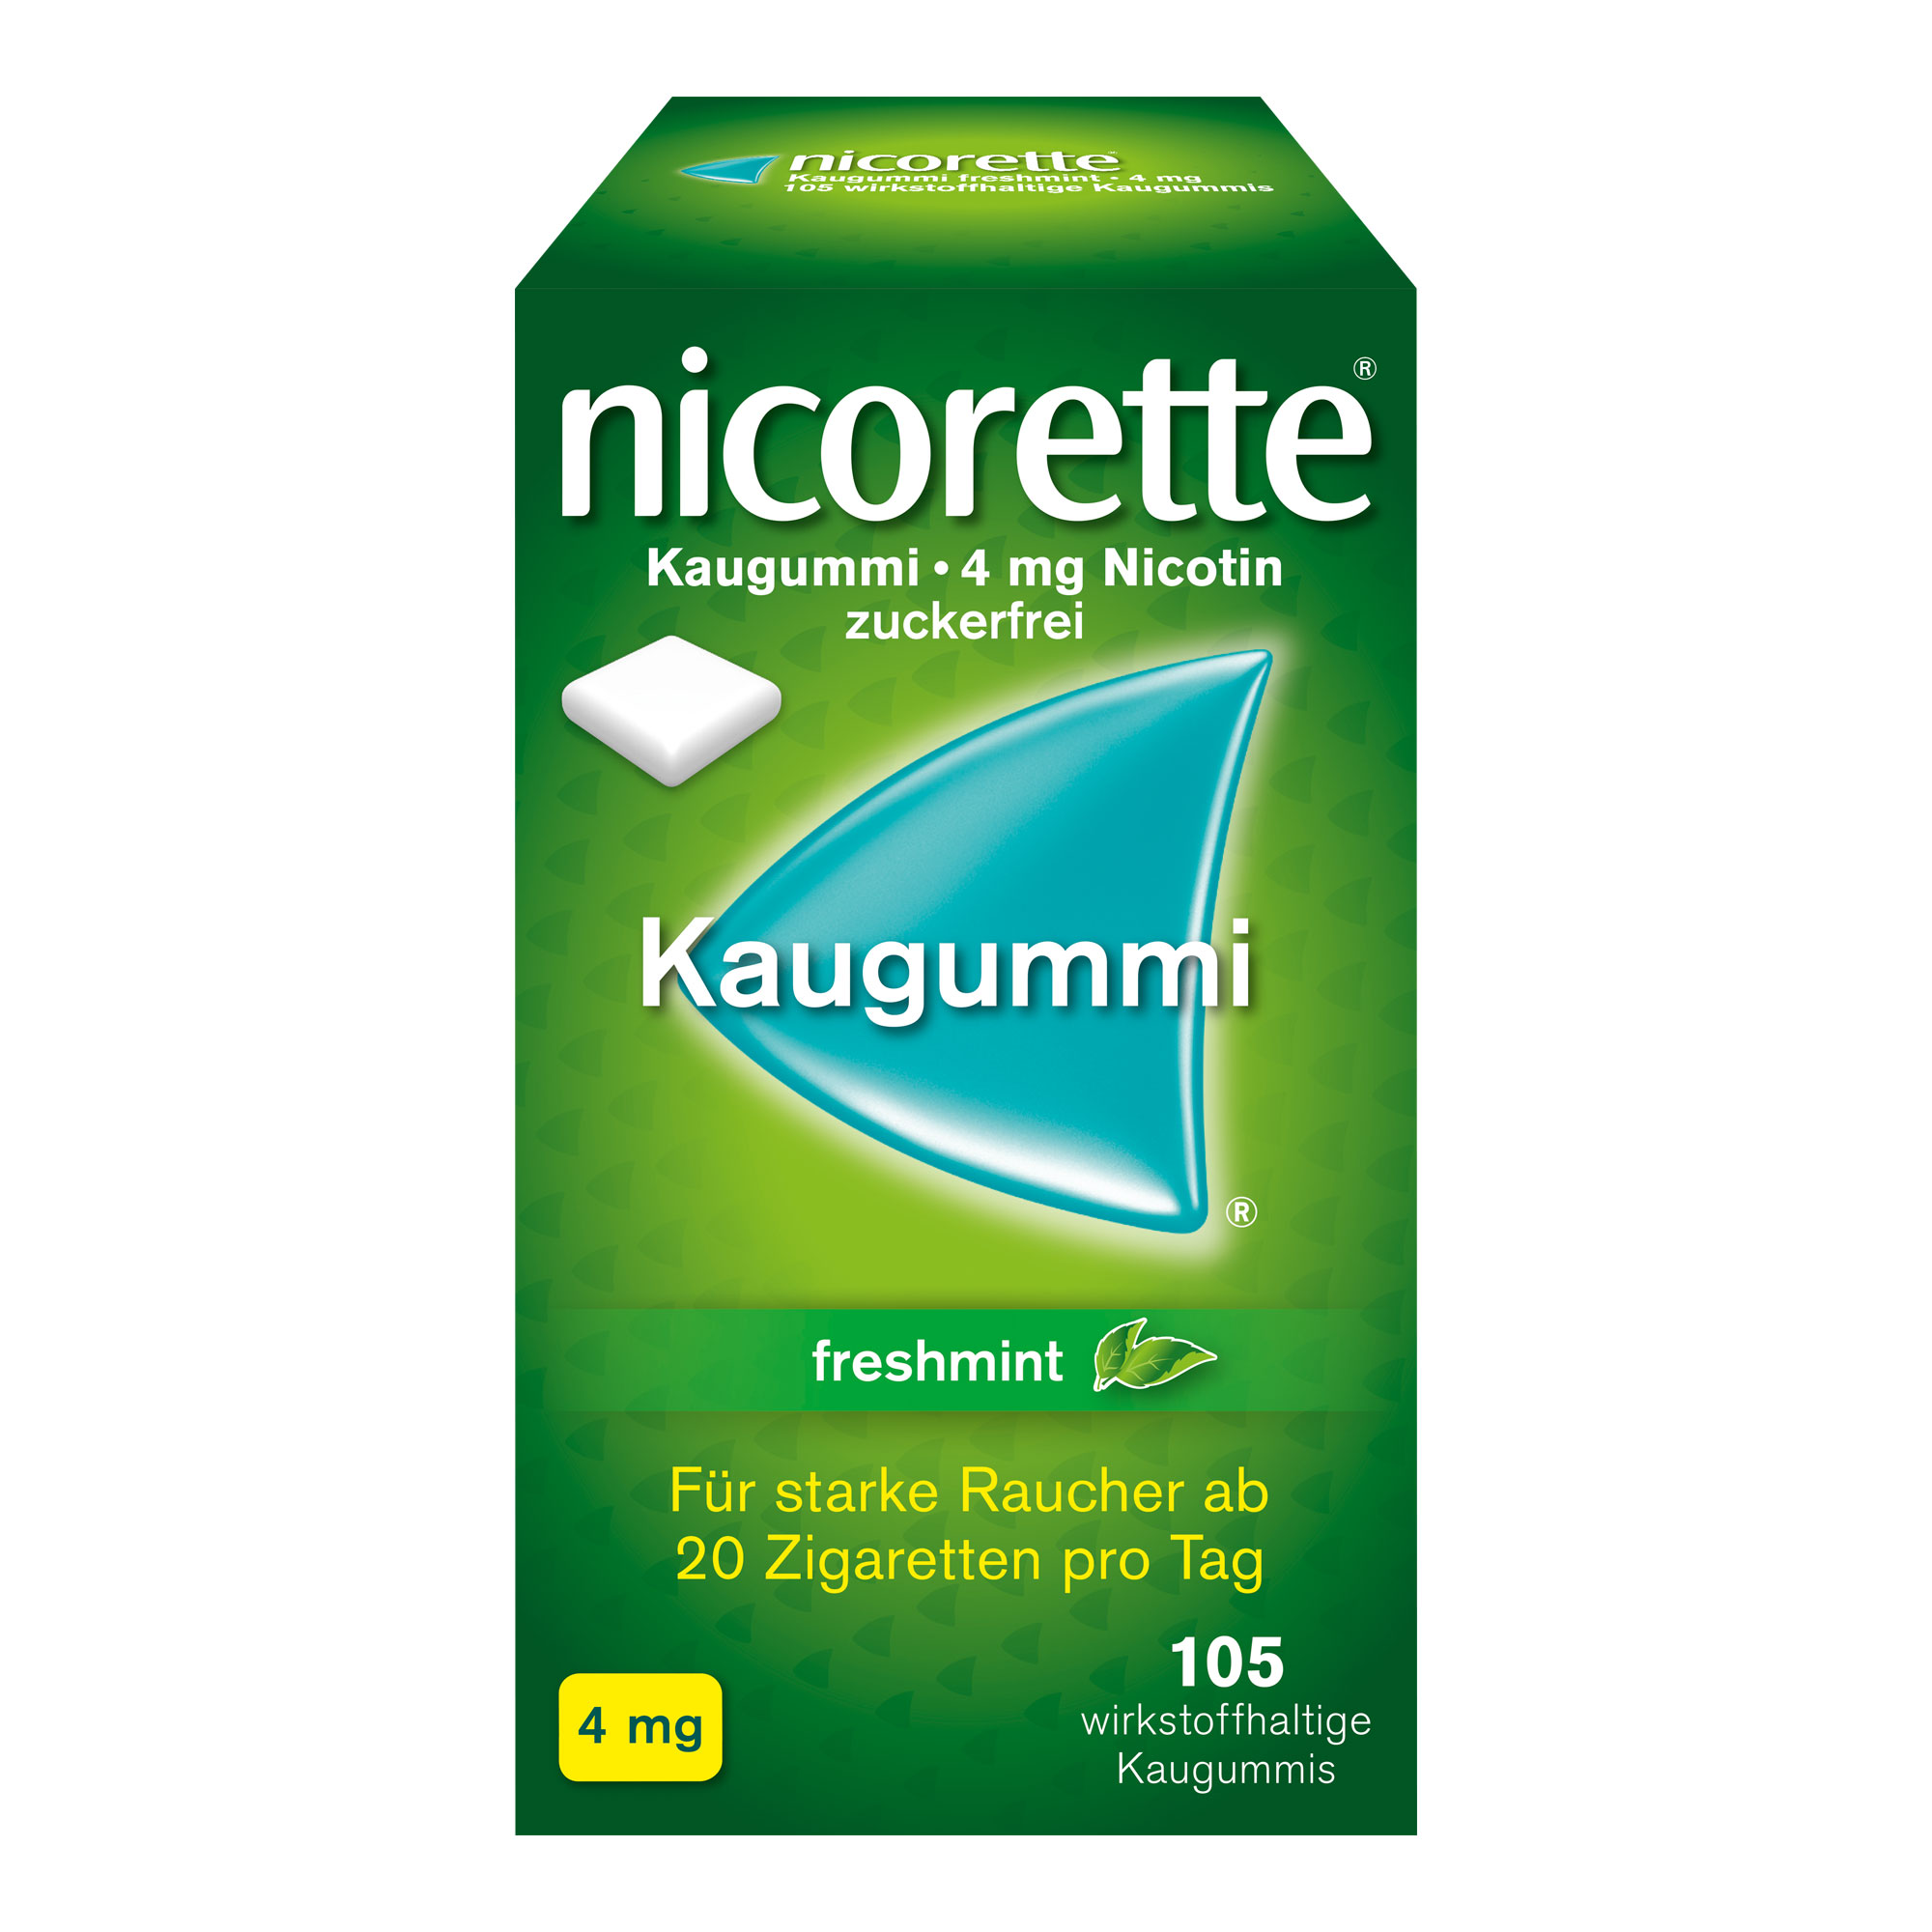 nicorette® Kaugummi freshmint mit 4 mg Nikotin lindert Rauchverlangen und Entzugssymptome, wie innere Unruhe und gesteigerten Appetit während der Raucherentwöhnung. Mit Pfefferminzgeschmack.